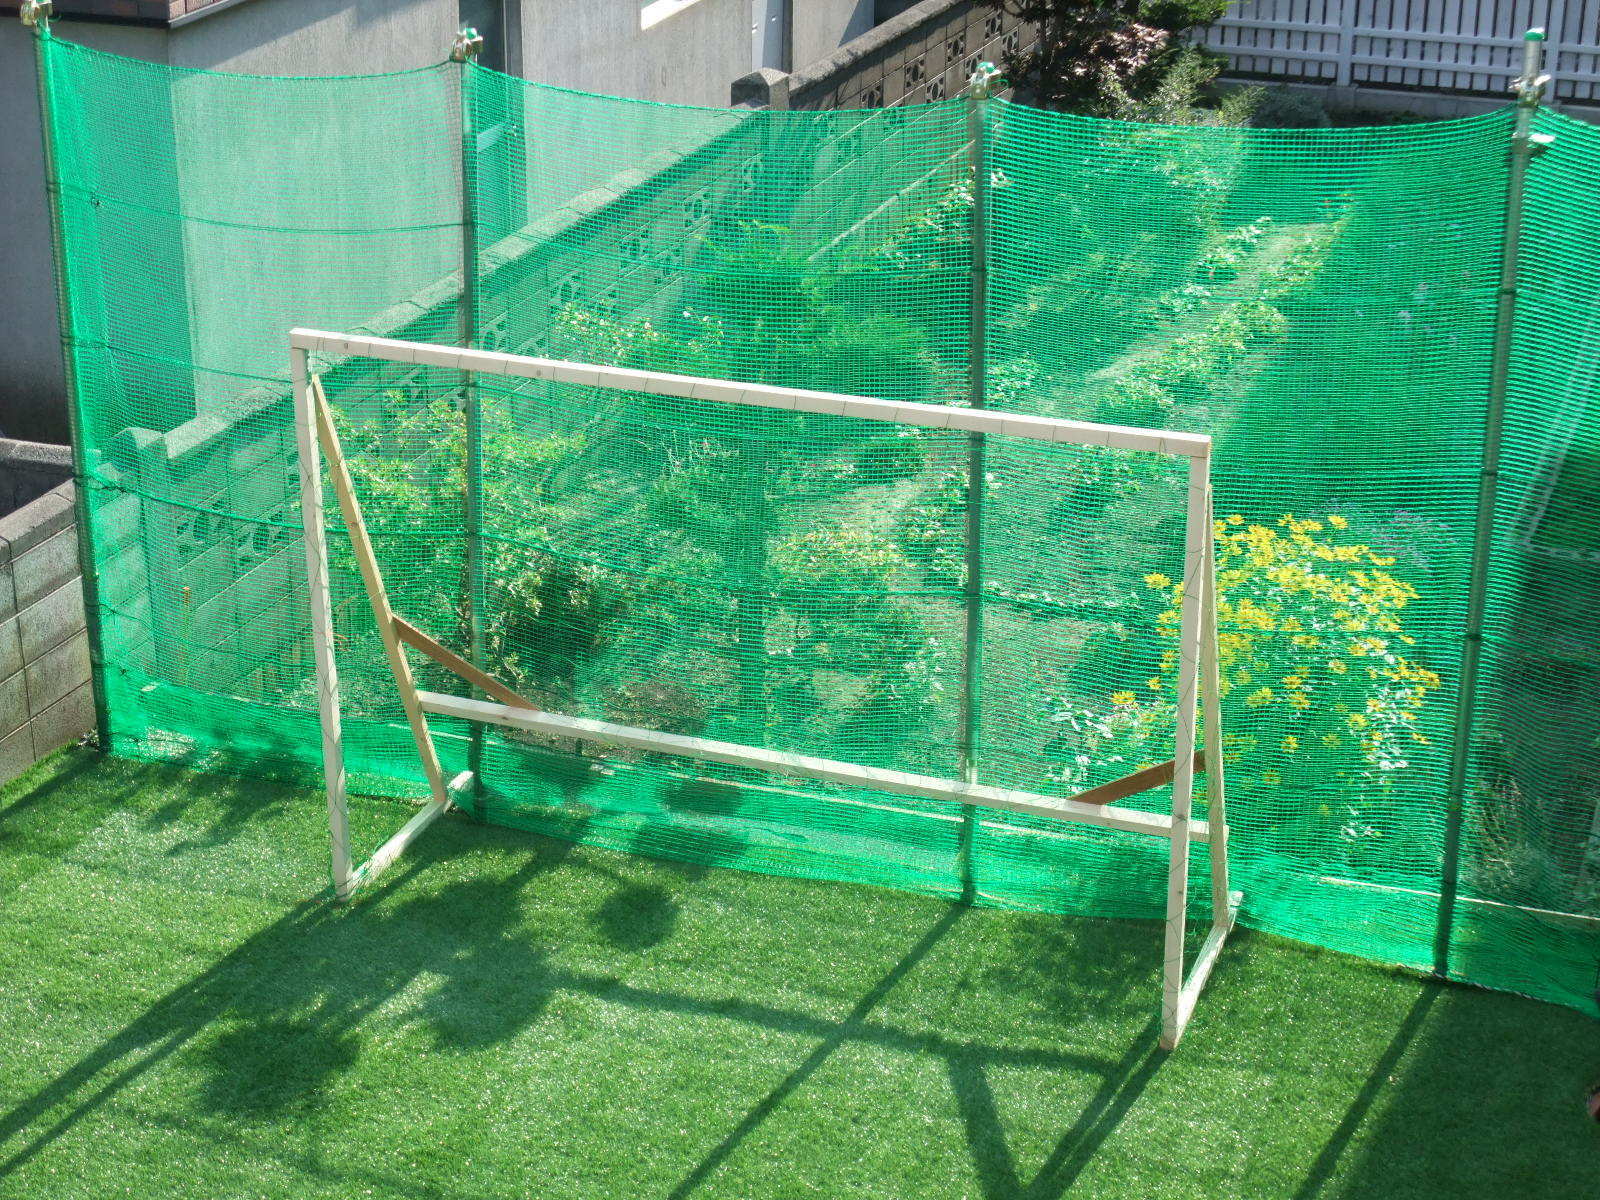 人工芝にした庭にサッカーのゴールを作った 手づくり企画